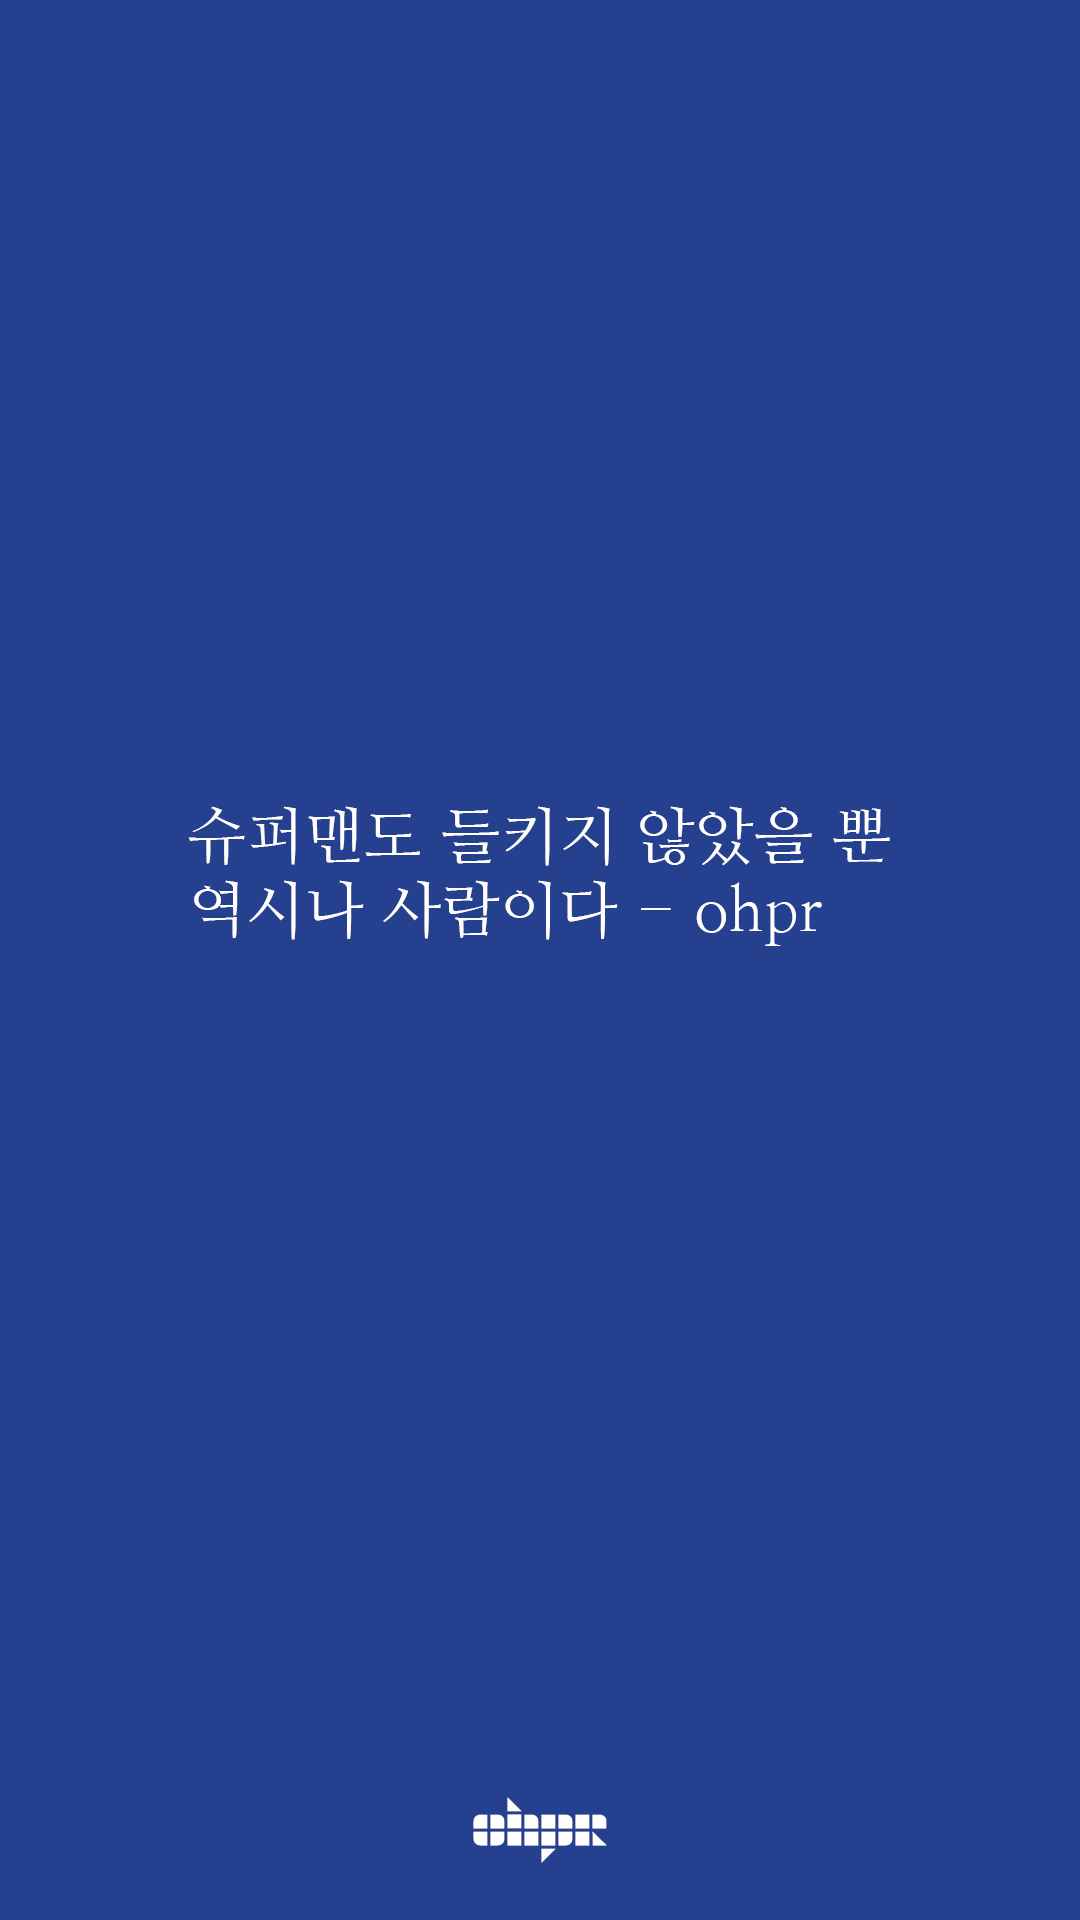 ohpr_wording35